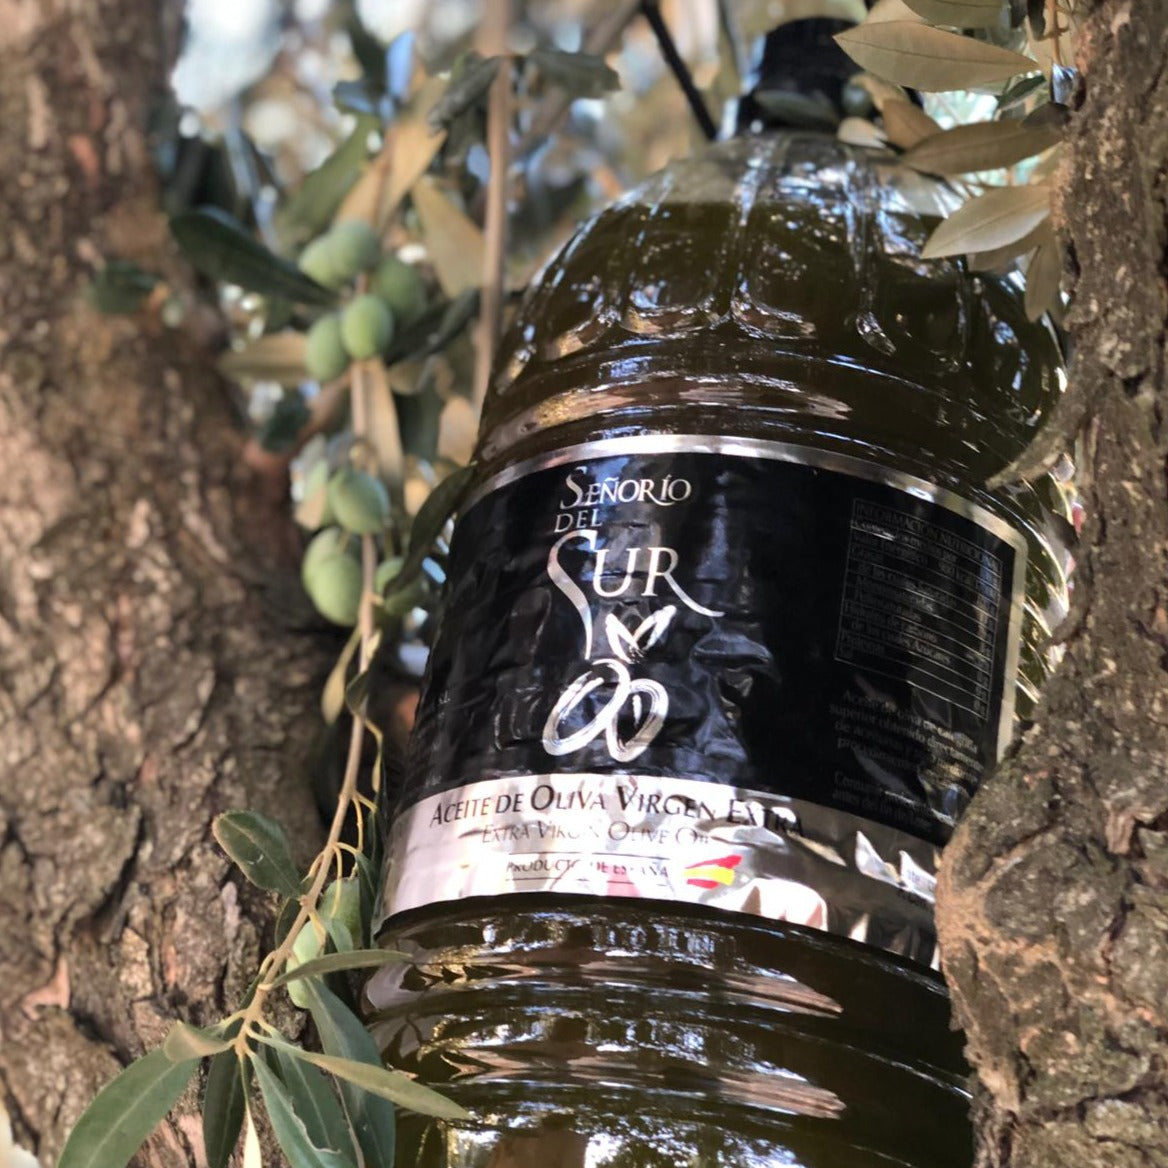 Extra Virgin Olive Oil 'Señorío del Sur' 5 Litres